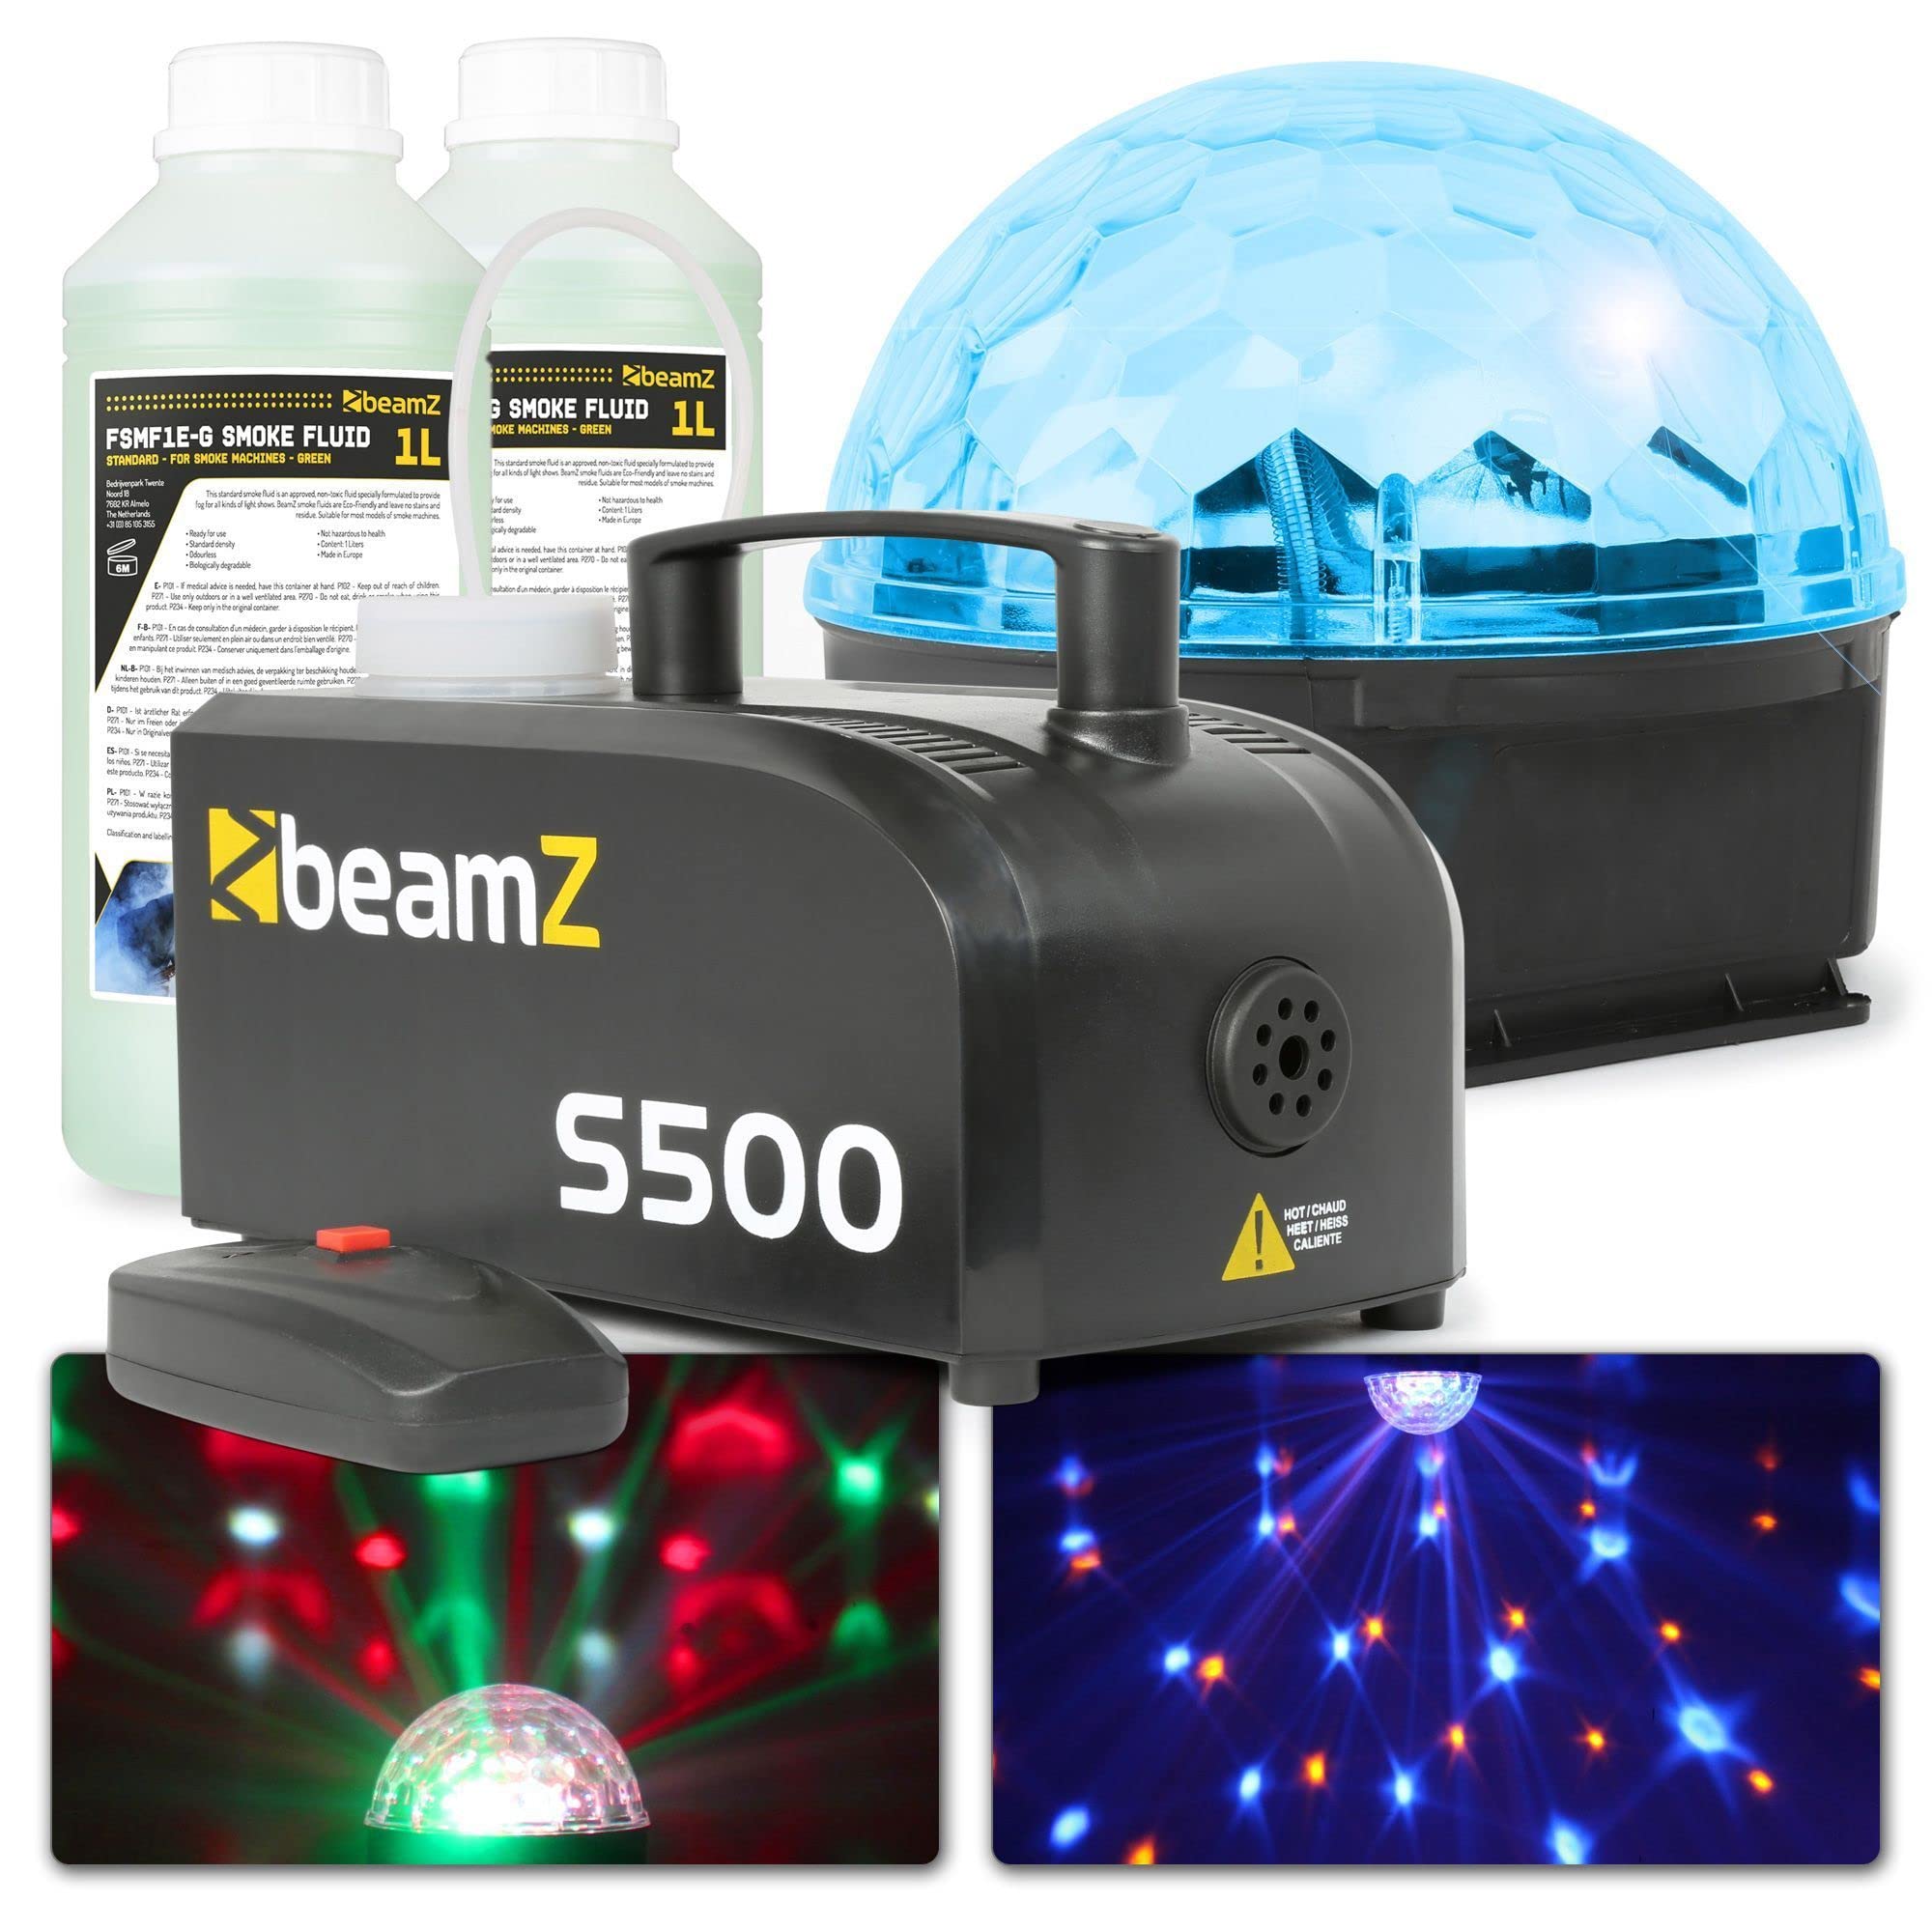 Partybeleuchtungsset - BeamZ Party Pack S - Komplettes Beleuchtungsset für eine Party zu Hause - Jelly Ball und 500-Watt-Nebelmaschine mit mehr als 2 Litern Nebelflüssigkeit